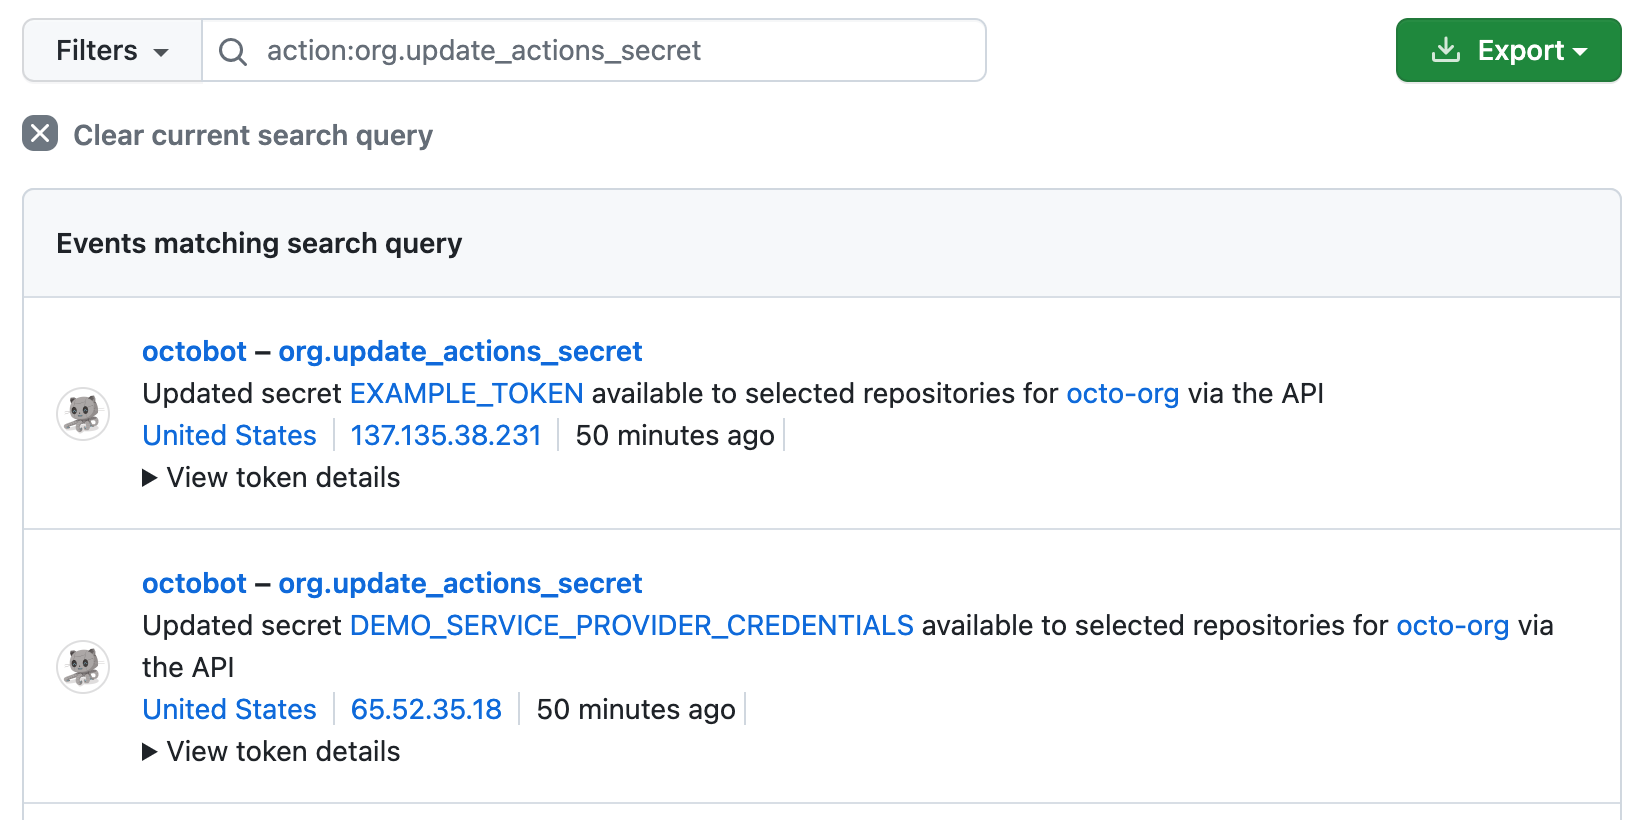 Captura de tela mostrando a procura de "action:org.update_actions_secret" no log de auditoria de uma organização. Dois resultados detalham atualizações de API em dois segredos que estão disponíveis para repositórios selecionados.